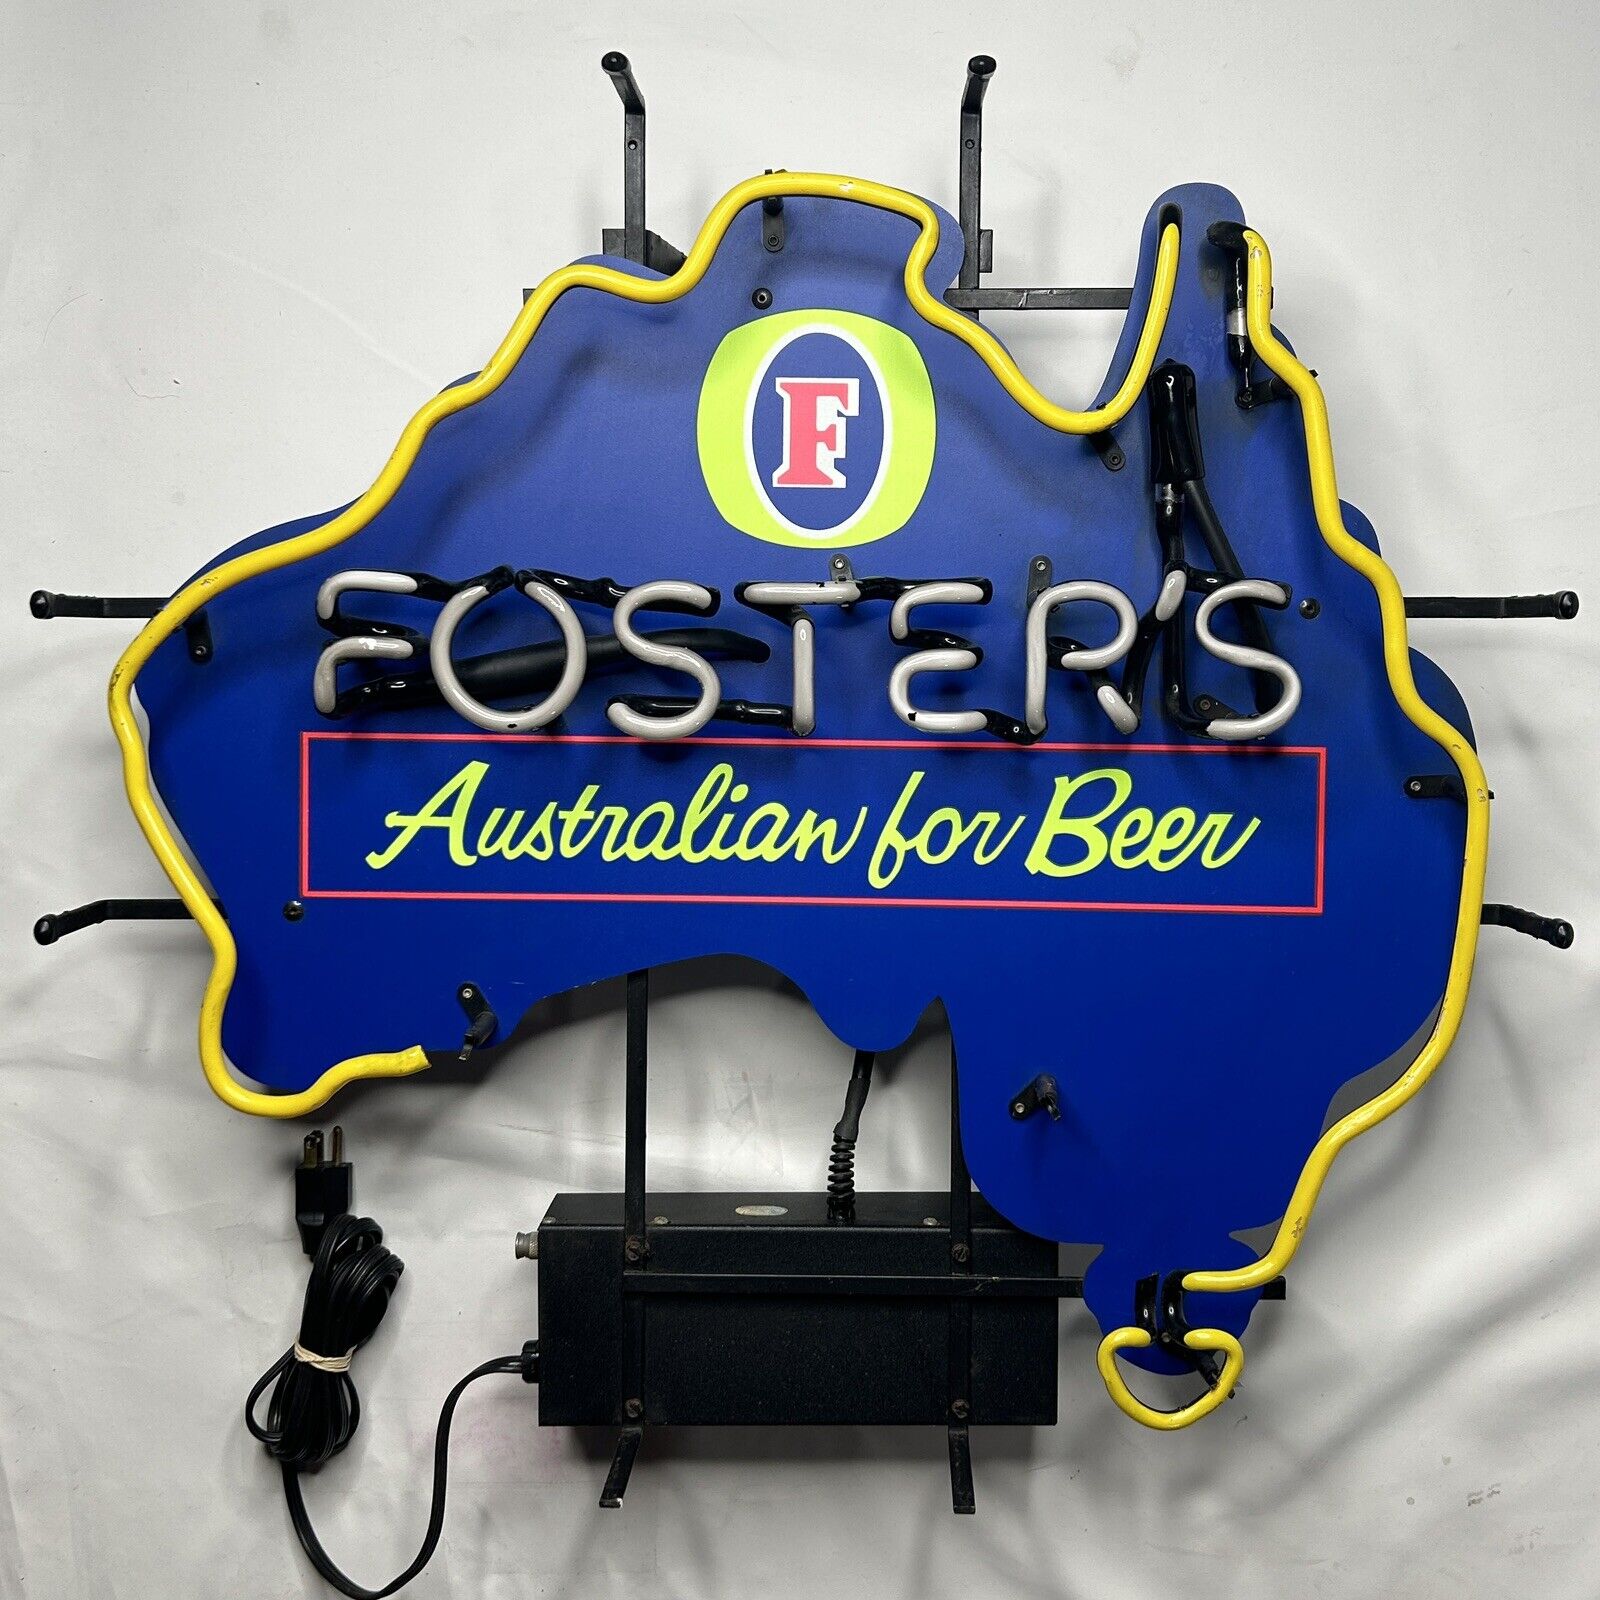 FOSTERS BEER Neon Beer Sign Broken Yellow Tube - “Foster’s” Still Lights Up